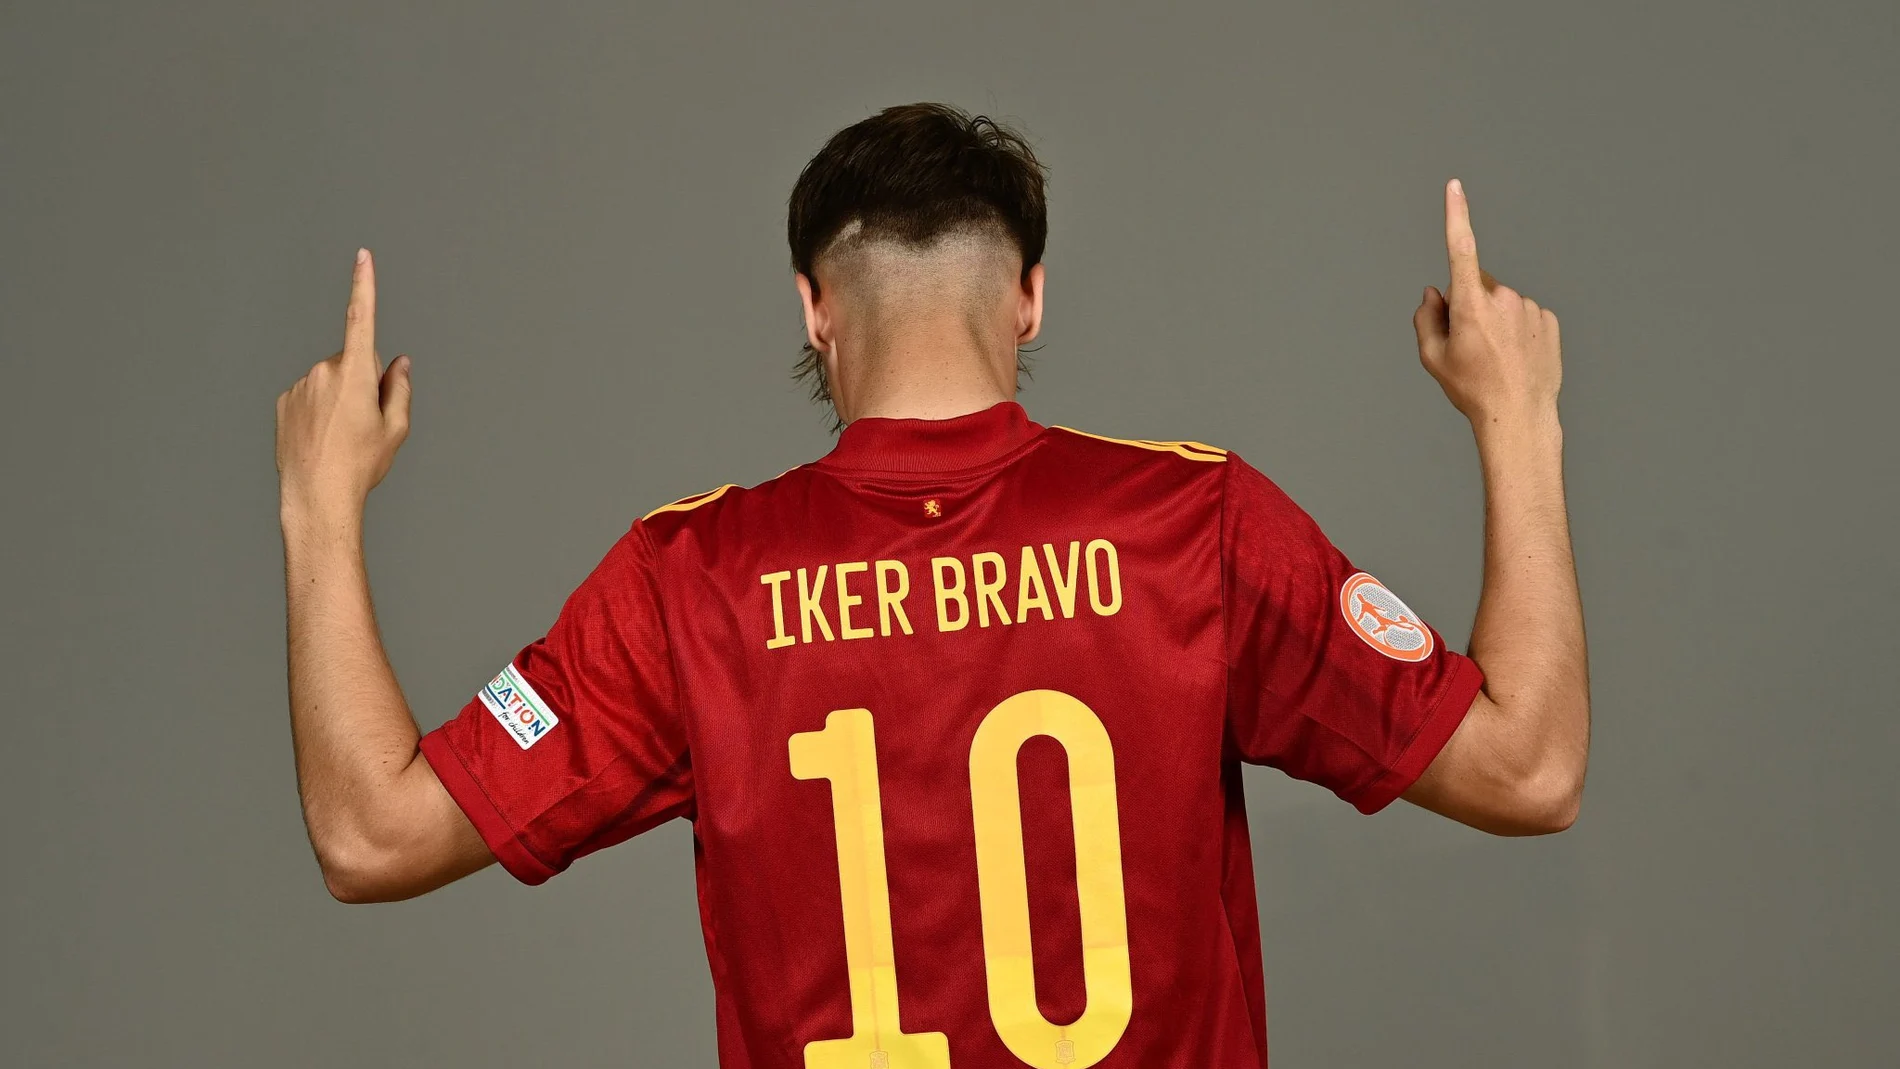 Iker Bravo